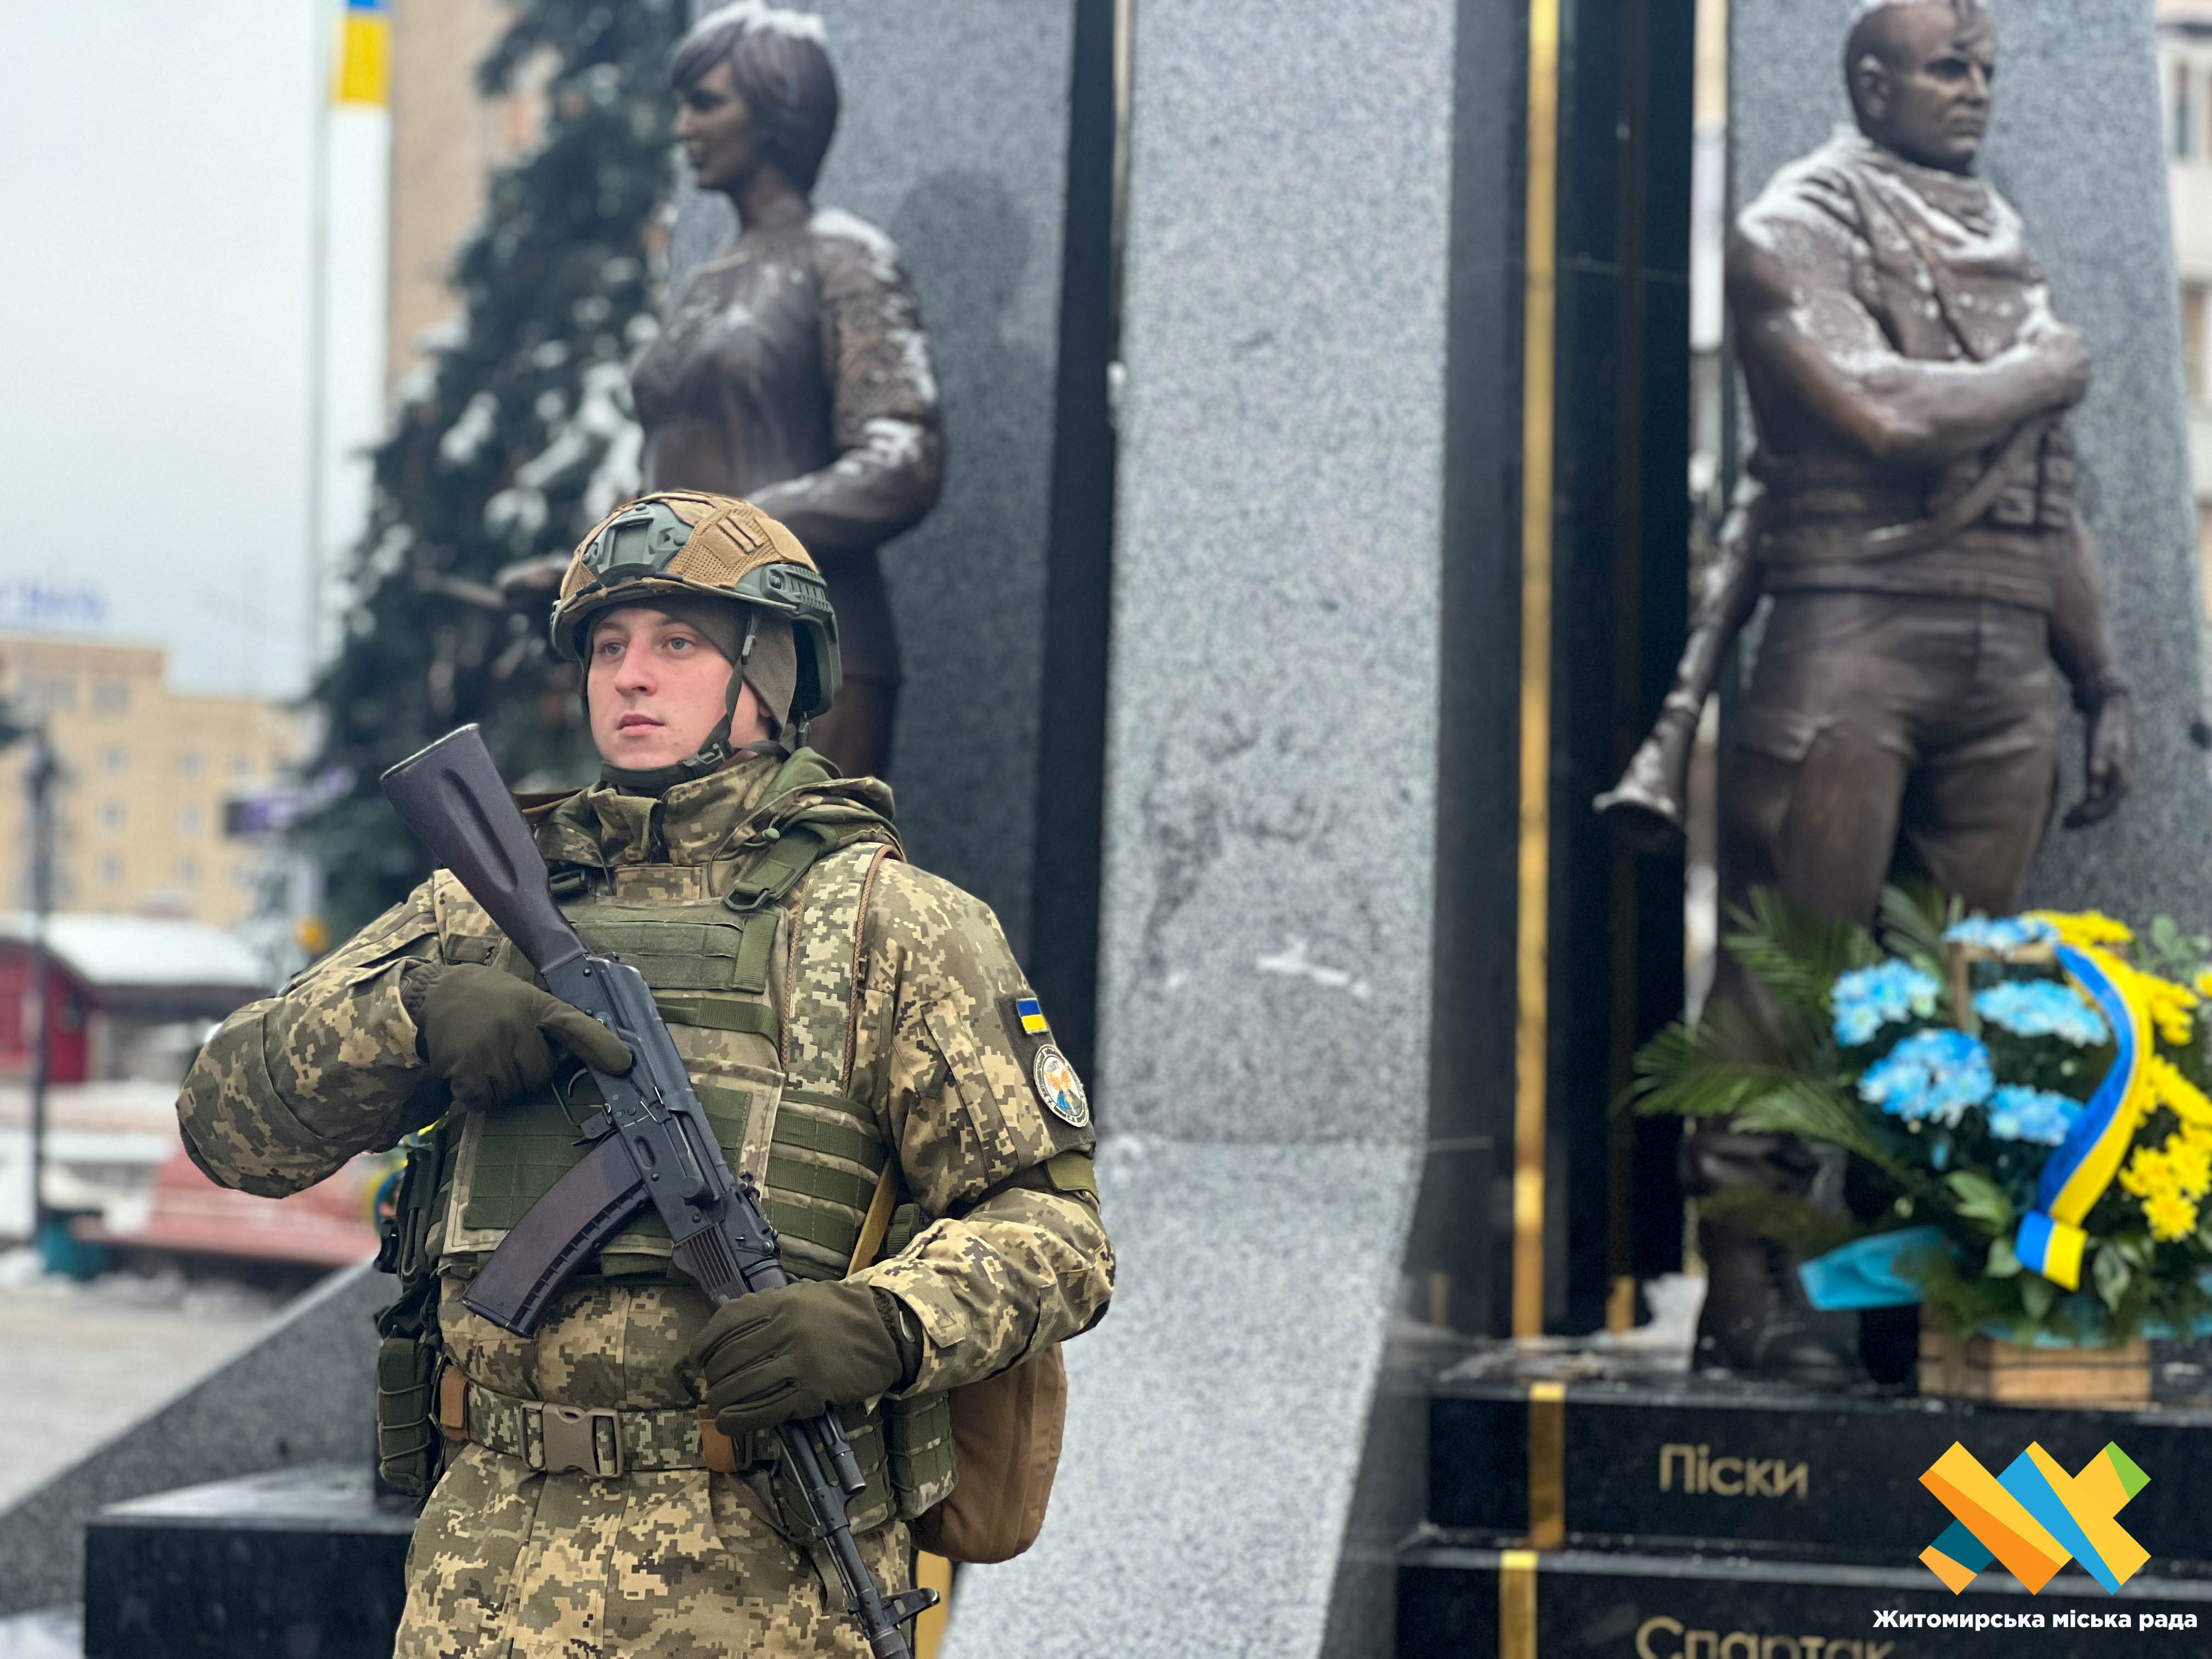 6 грудня — День Збройних Сил України! Сьогодні дякуємо нашим Захисникам та Захисницям, які мужньо боронять нашу землю від ворога